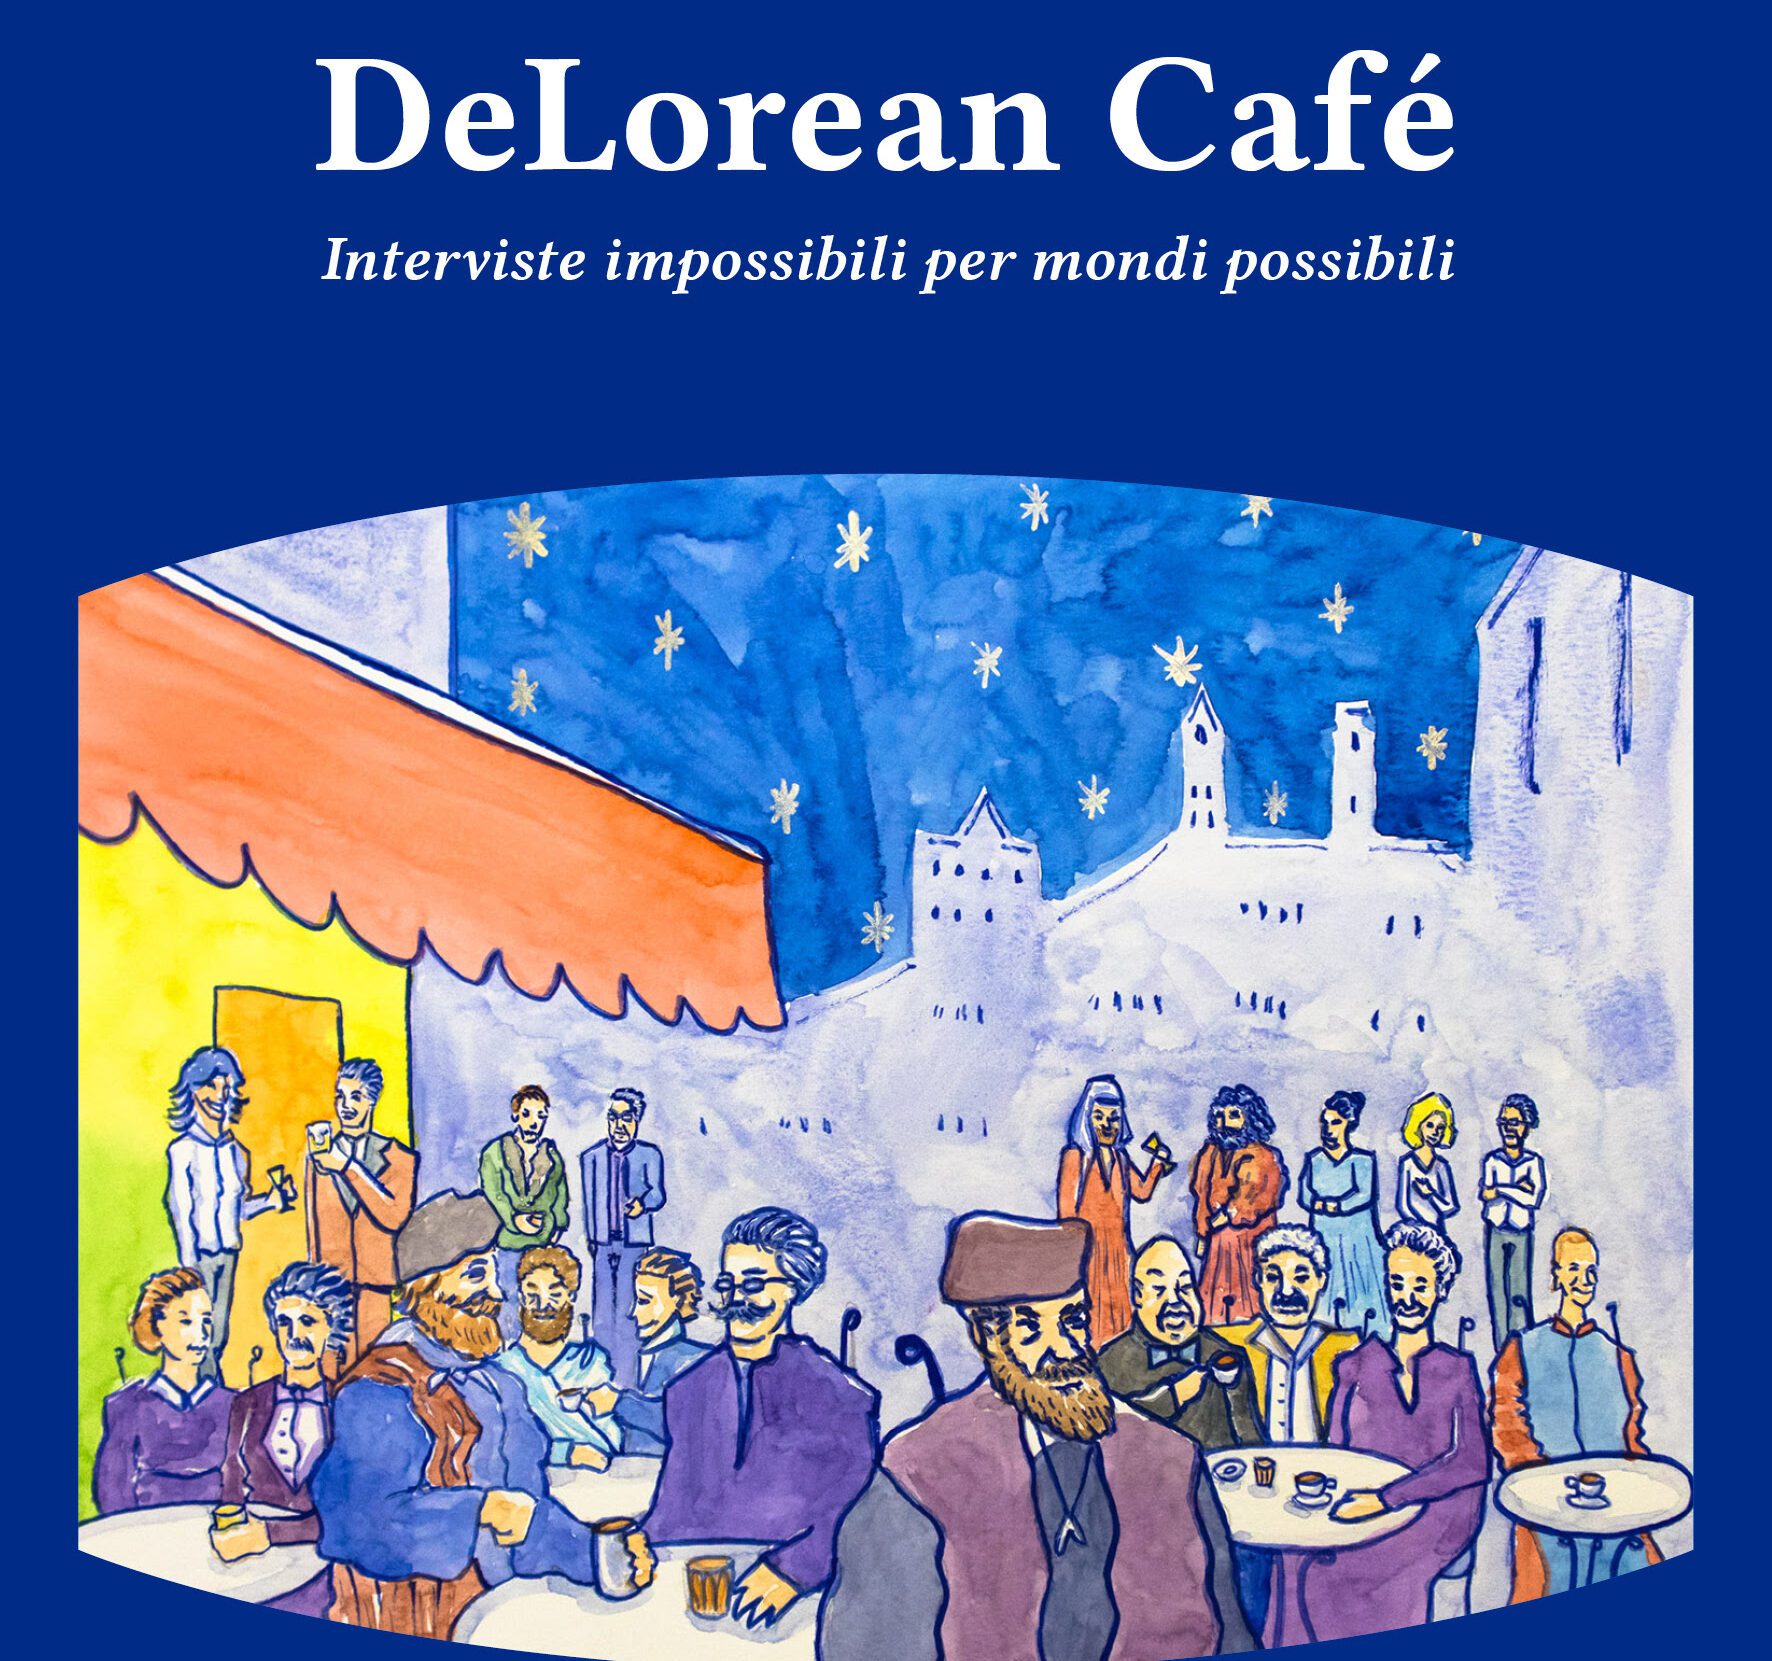 «DeLorean Café», anche 4 autori cilentani intervistano celebri pensatori del passato